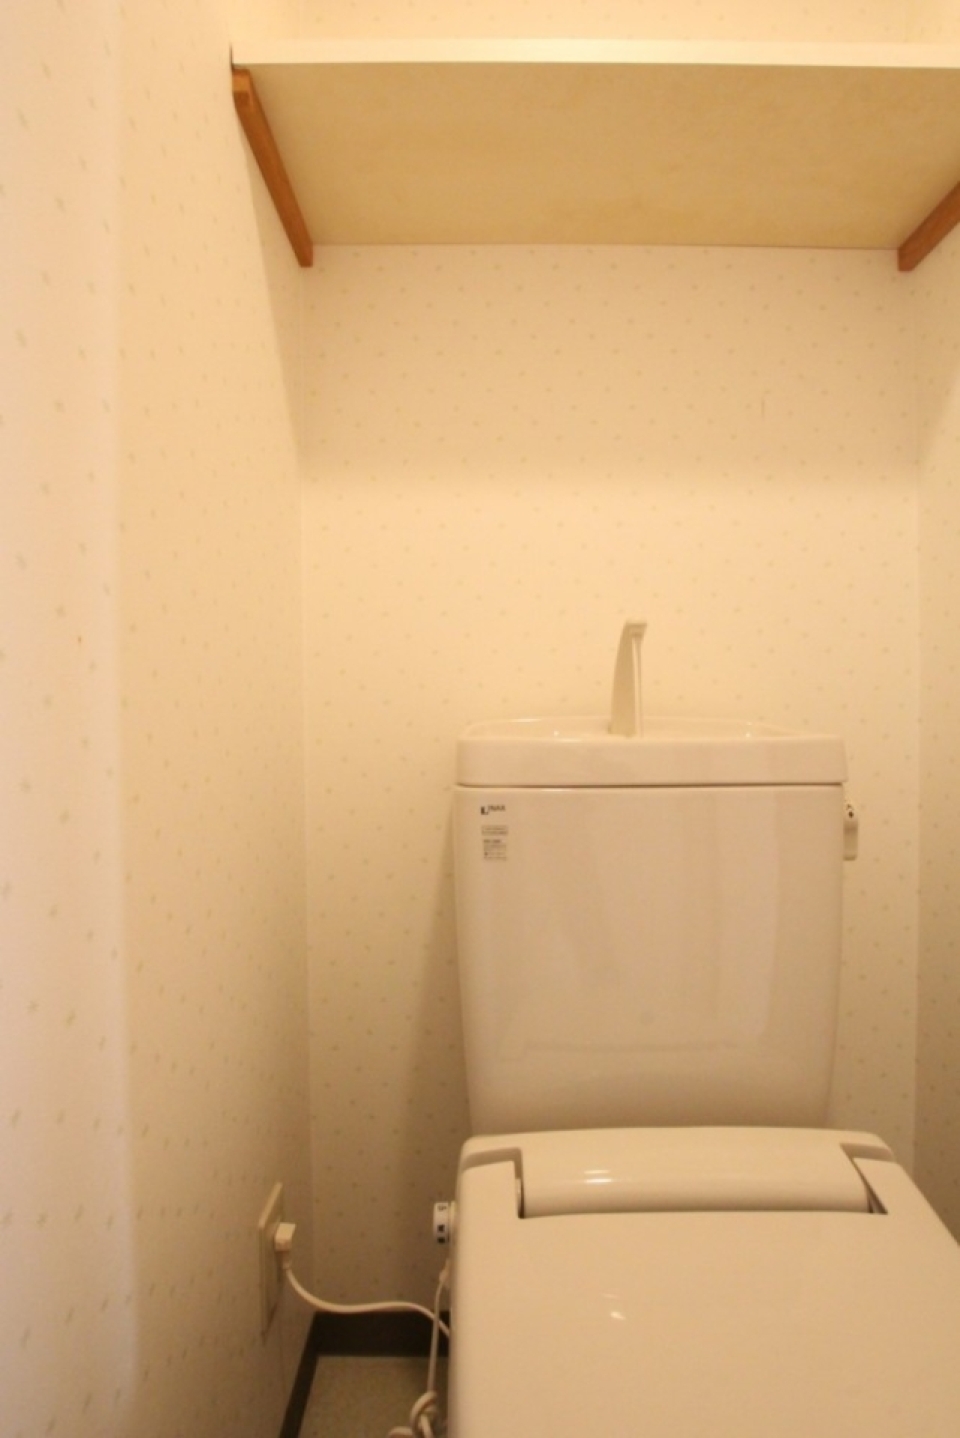 電源コンセントがあるからシャワートイレの設置も可能。